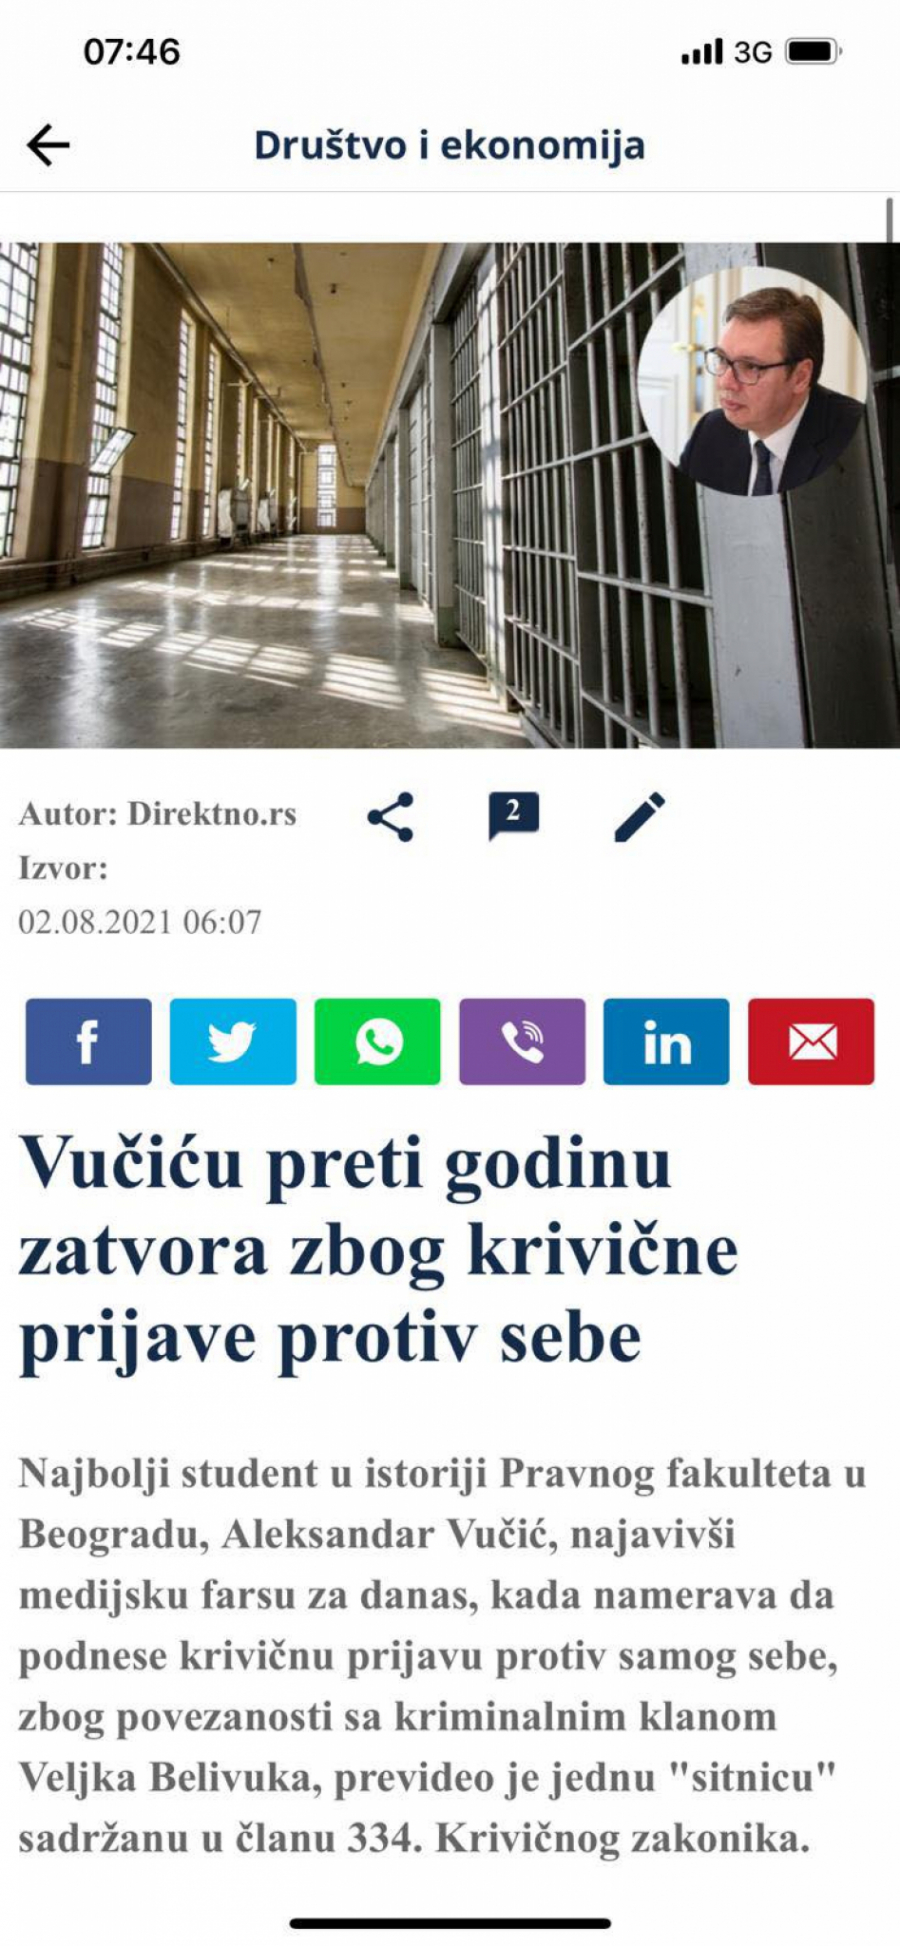 ZAO PLAN SPREMAN DUGO Vučića da strpamo u zatvor na godinu dana